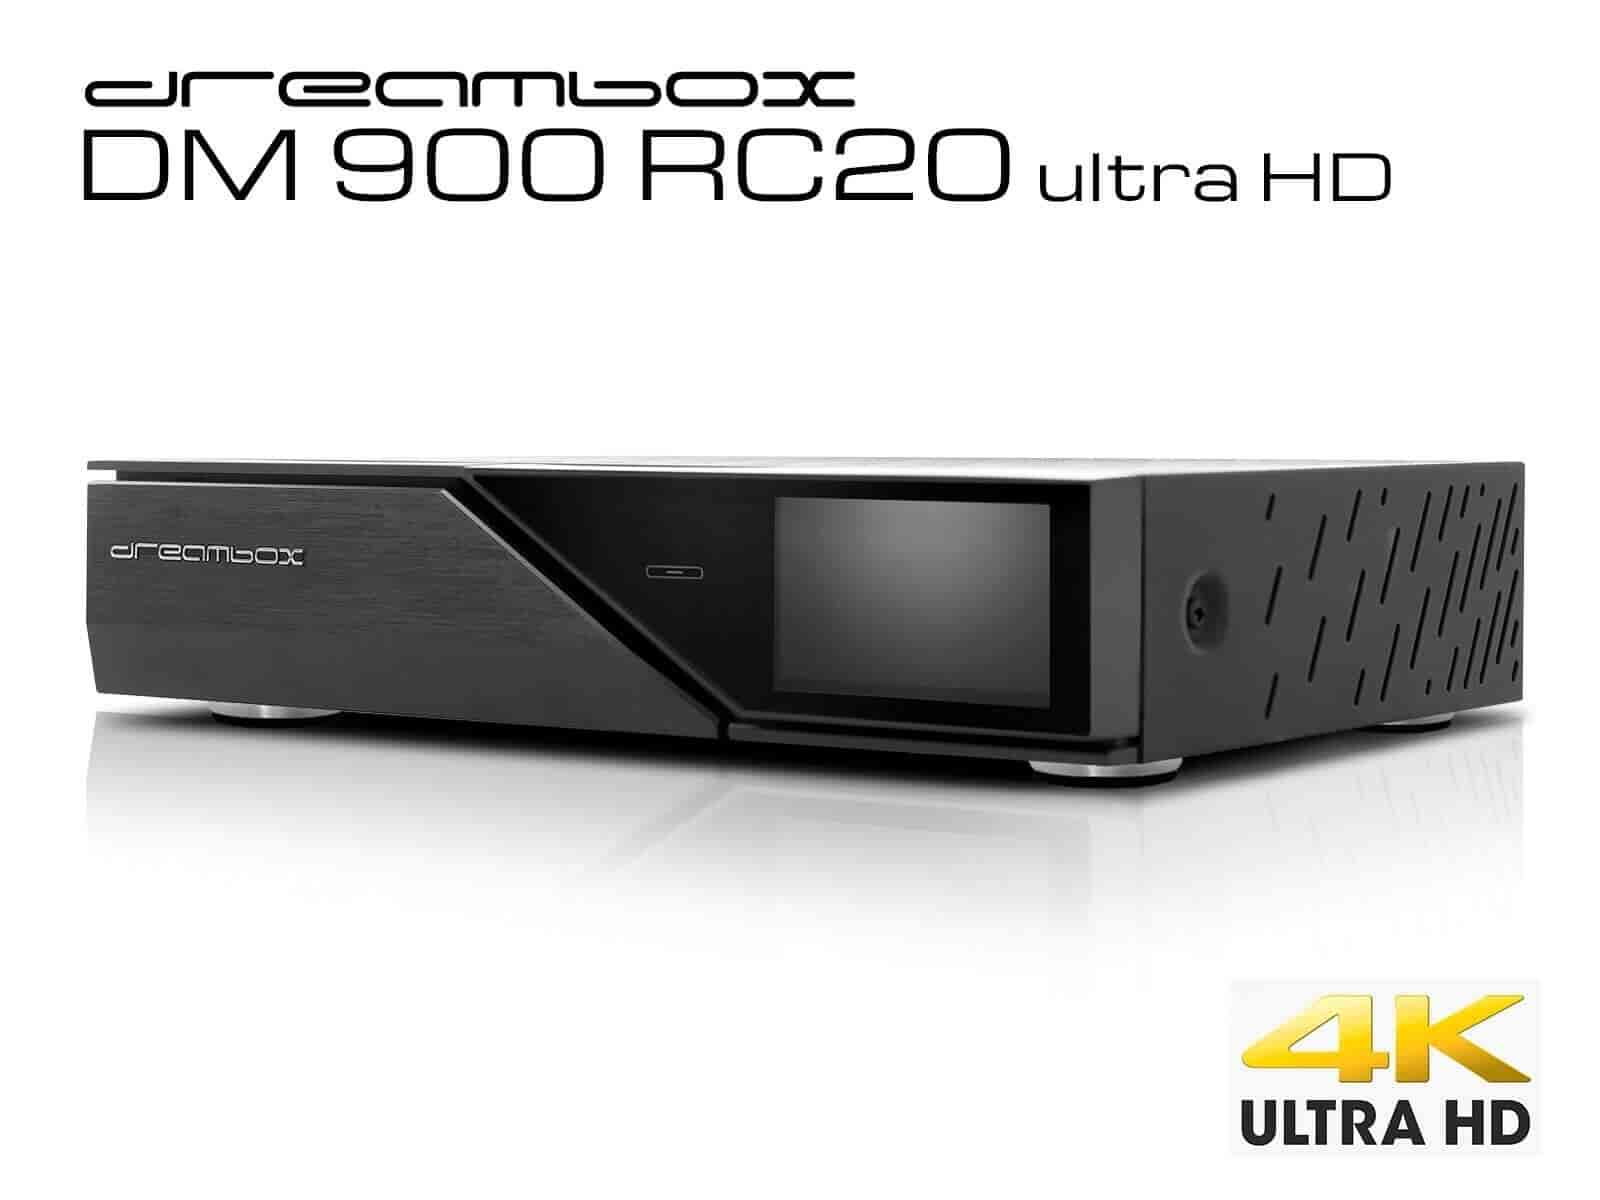 Dreambox DM900 RC20 UHD 4K E2 digitalmodtager 1x DVB-S2X MIS Dual Tuner. Her får du meget SAT Boks for pengene.